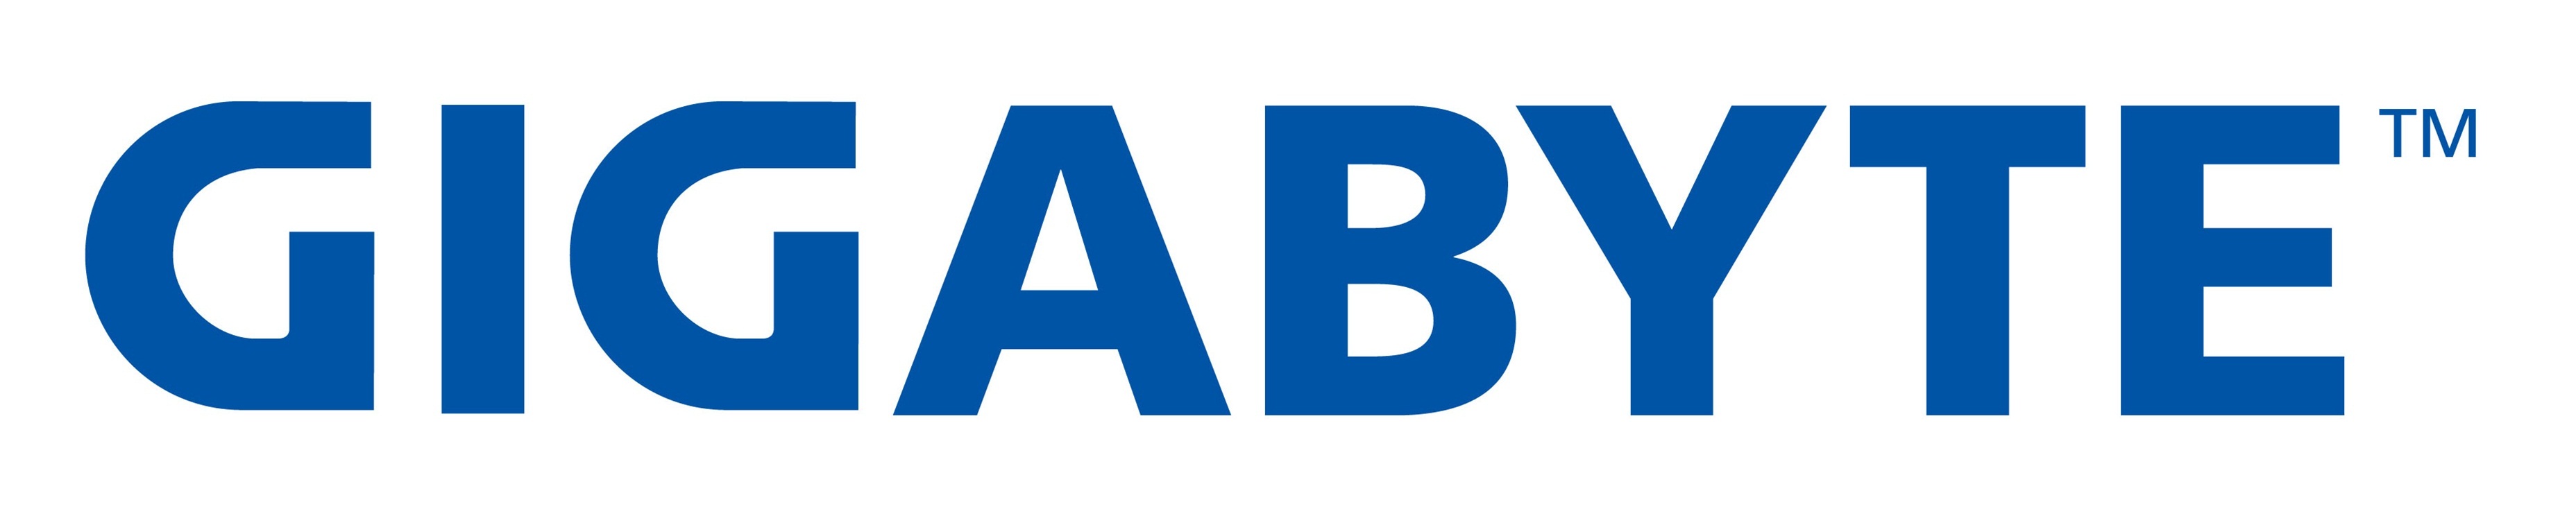 gigabyte logo